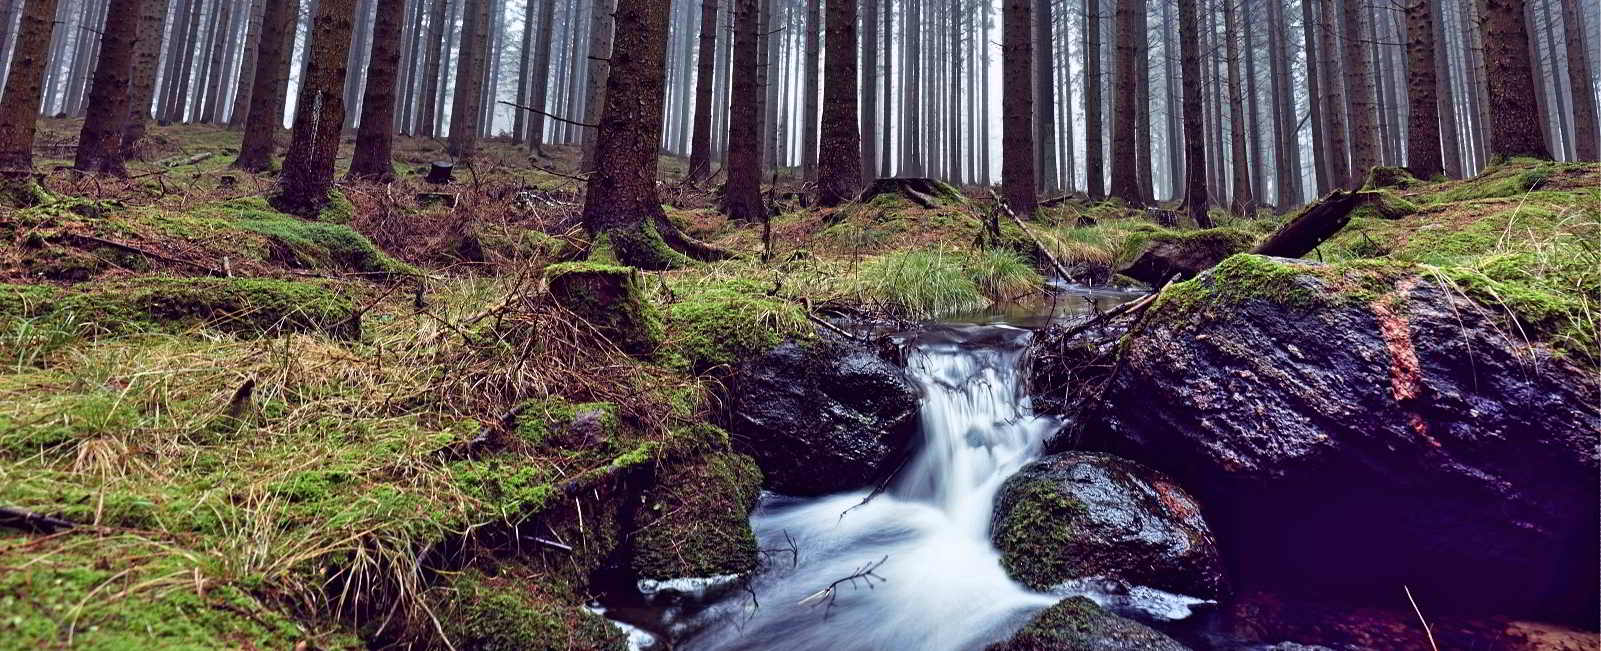 Almindingen ist einer der größten Wälder Dänemarks. Fotografie